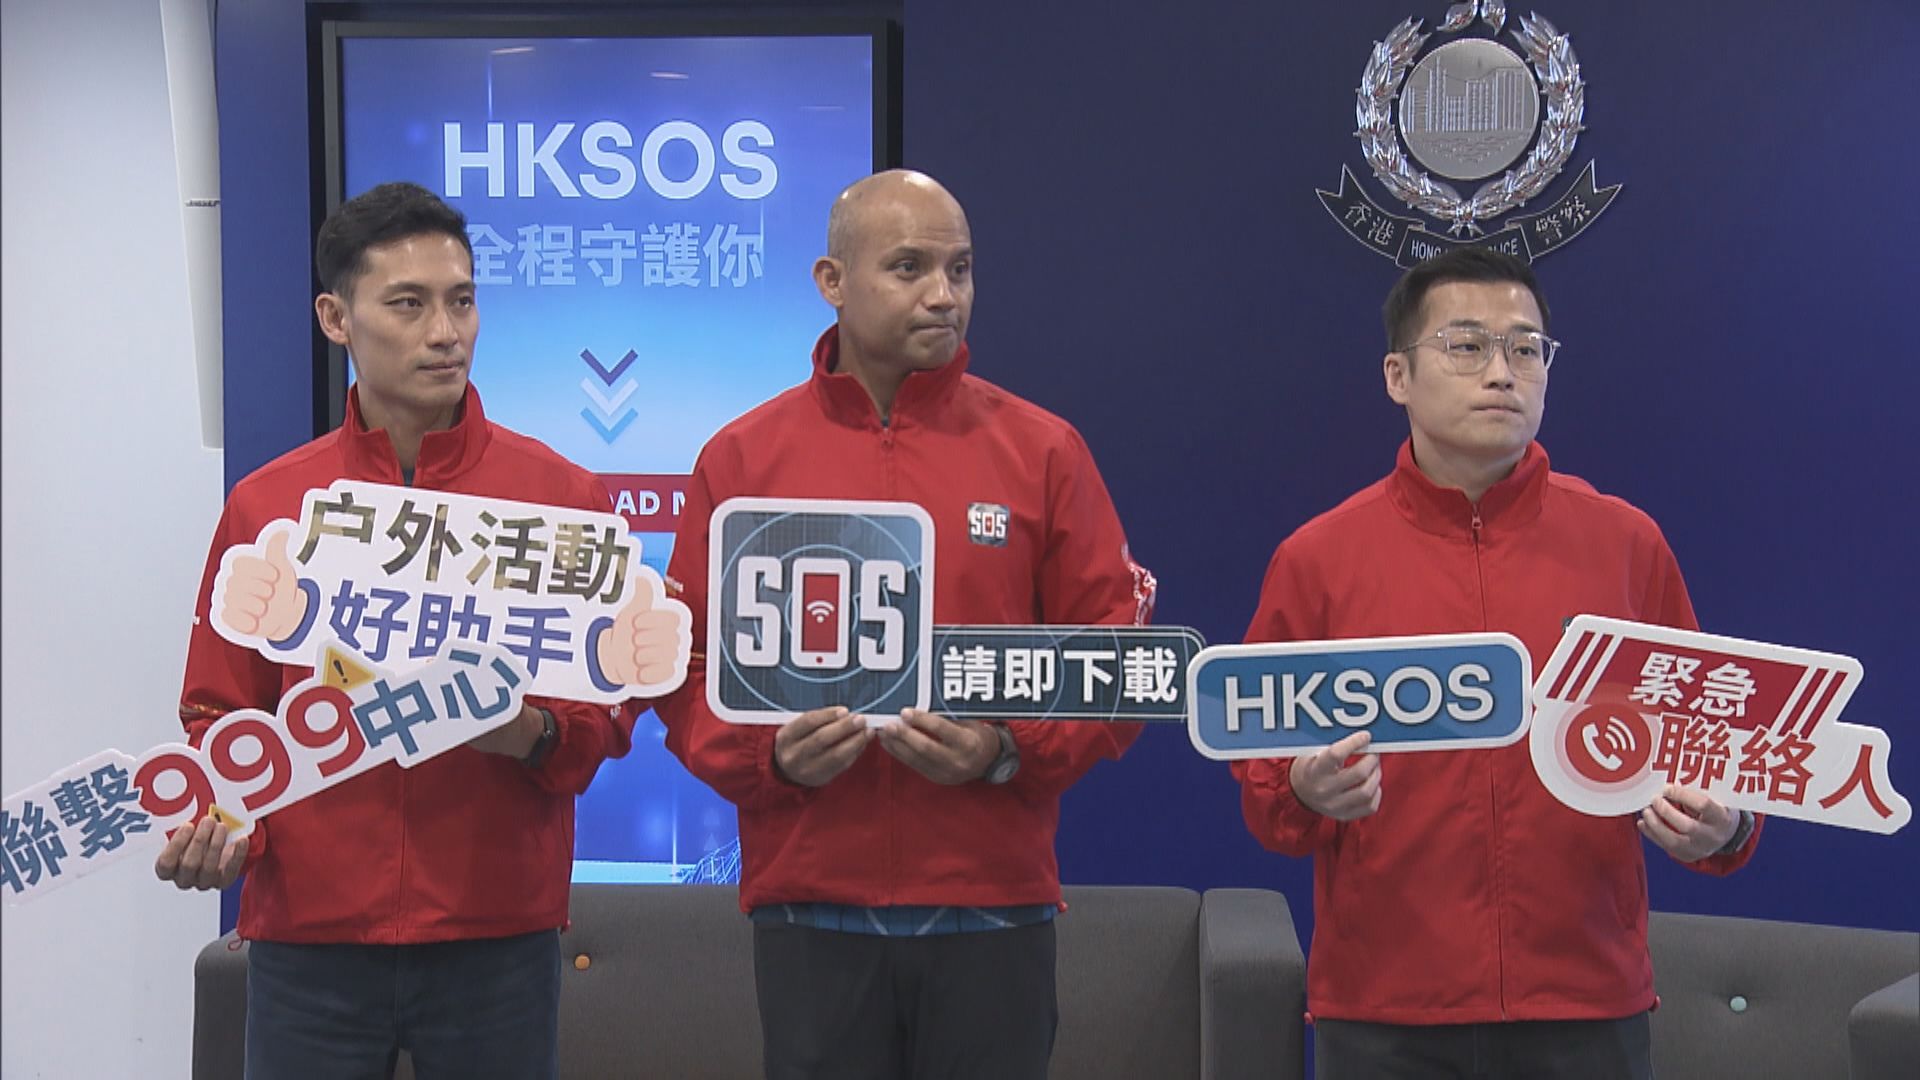 警方應用程式「HKSOS」錄得逾5萬7千次下載